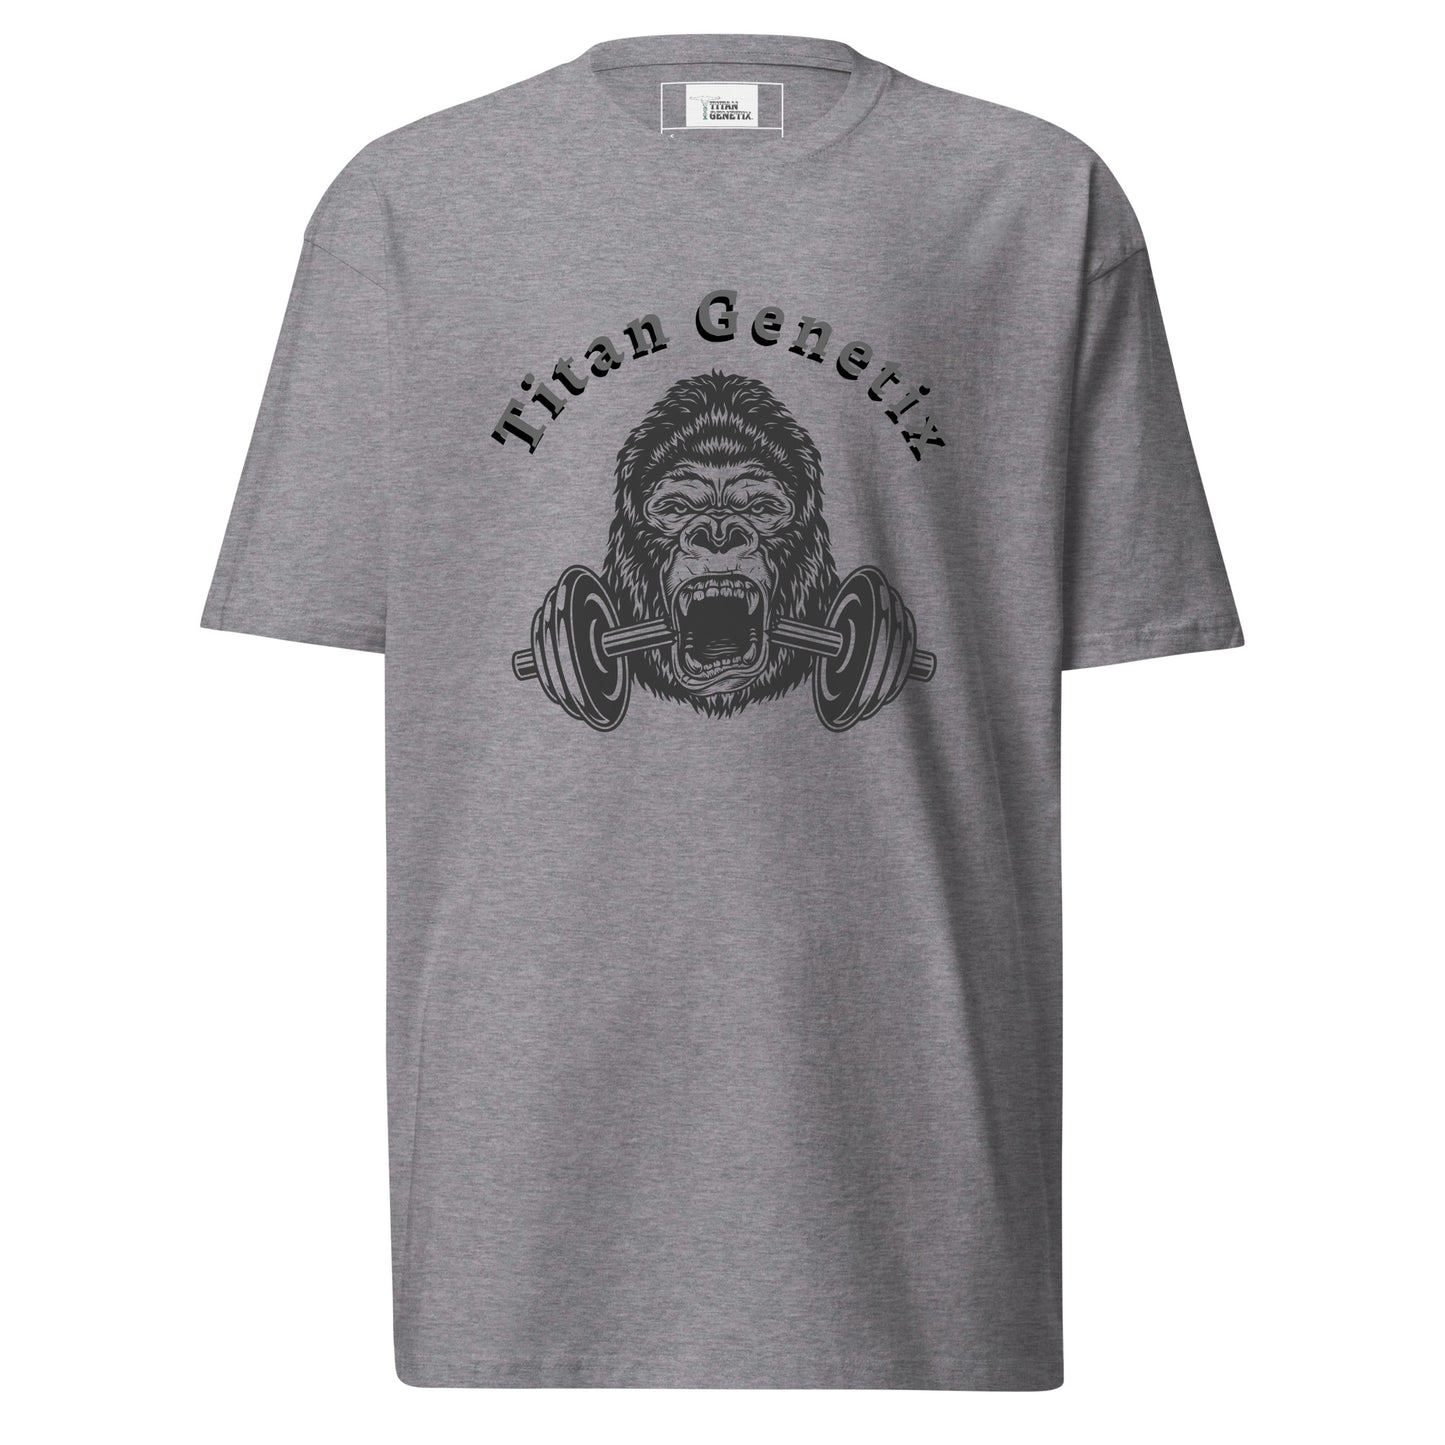 Titan Genetix - Titan Gorilla Men’s Premium Heavyweight T-Shirt